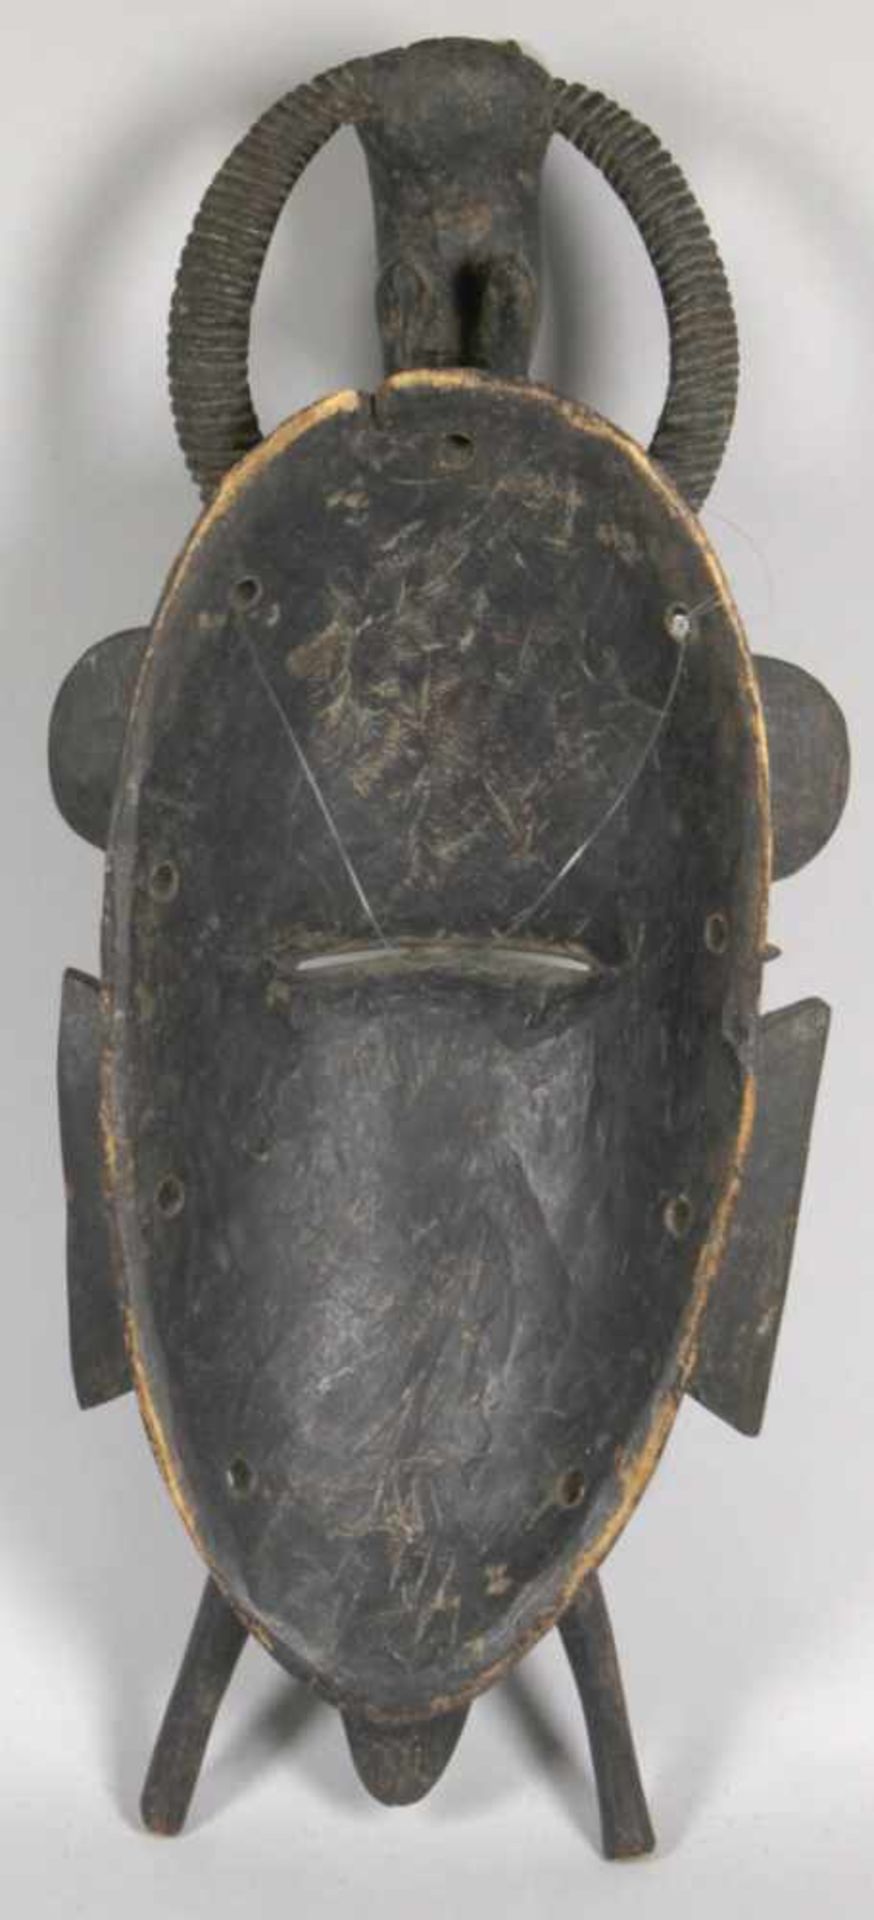 Kpelie-Maske, Senufo, Elfenbeinküste, strenges, kubistisches Gesicht mit kleinen, - Bild 2 aus 4